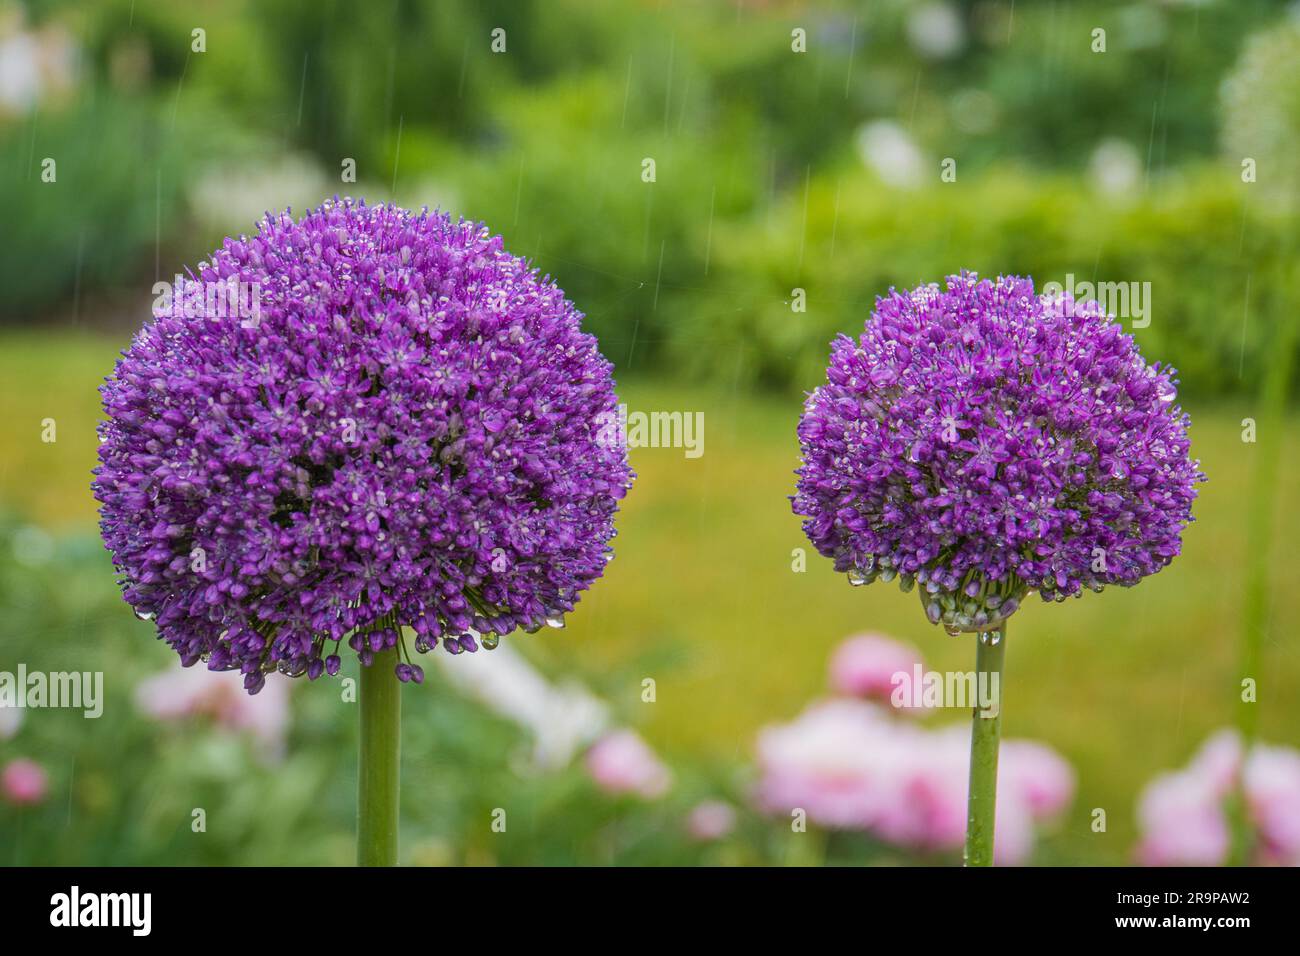 purple allium blossoms in the rain Stock Photo